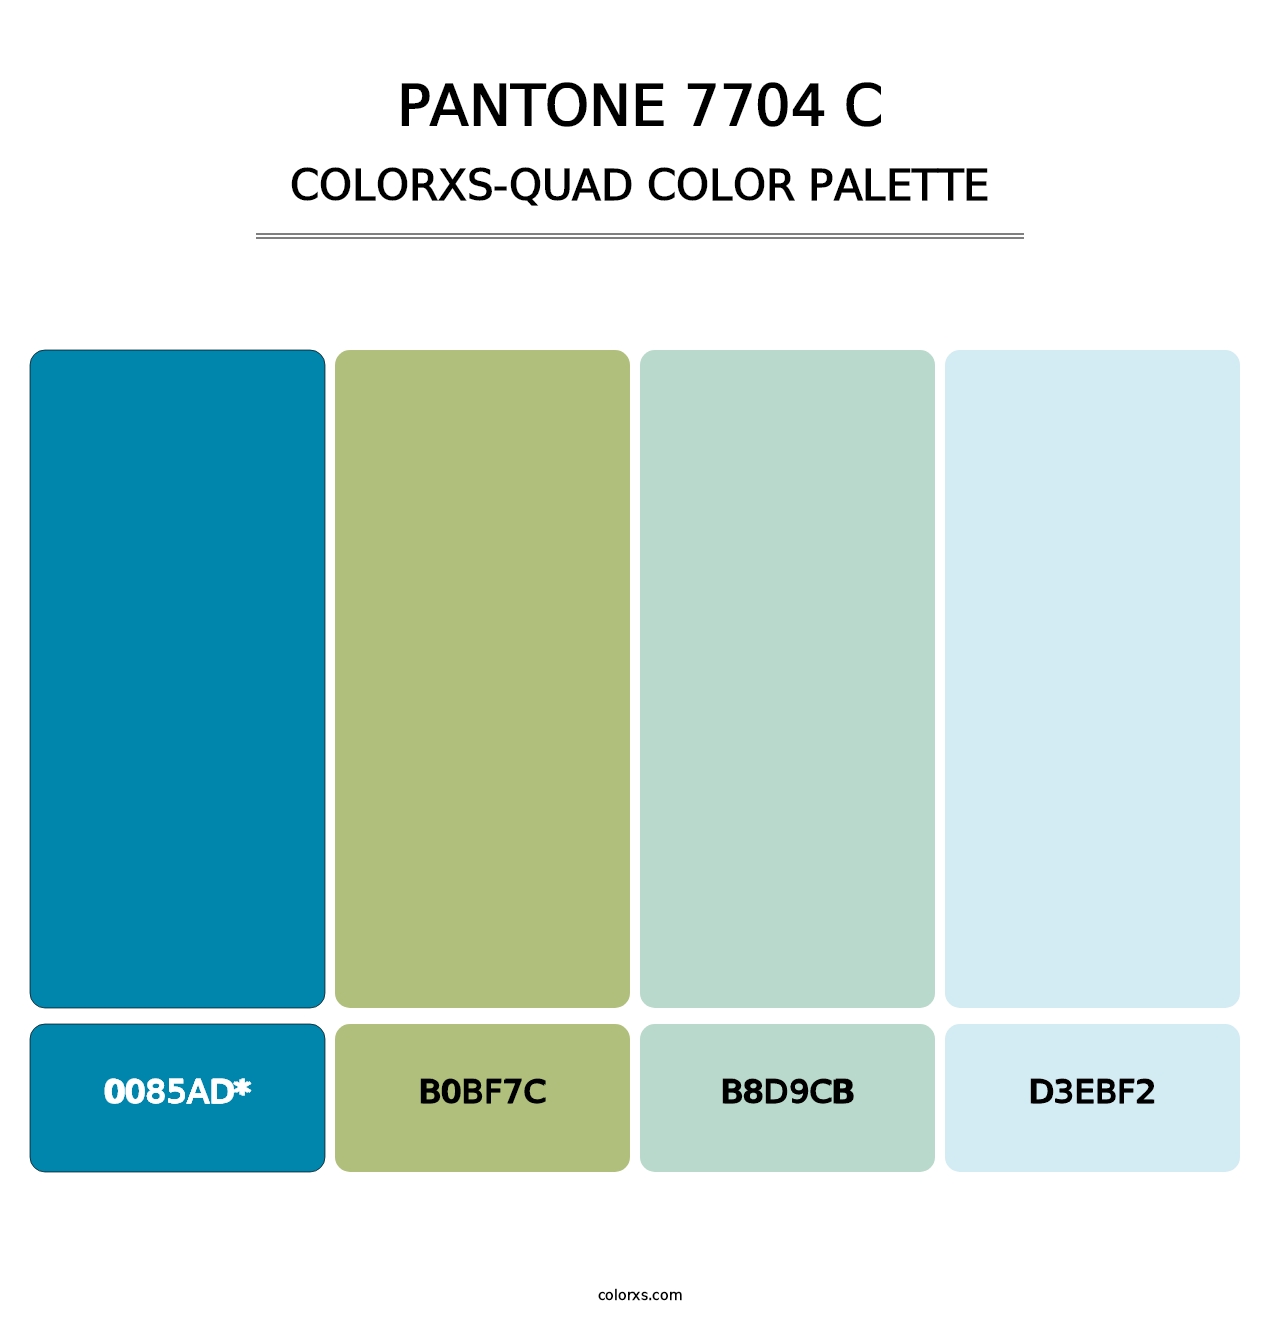 PANTONE 7704 C - Colorxs Quad Palette